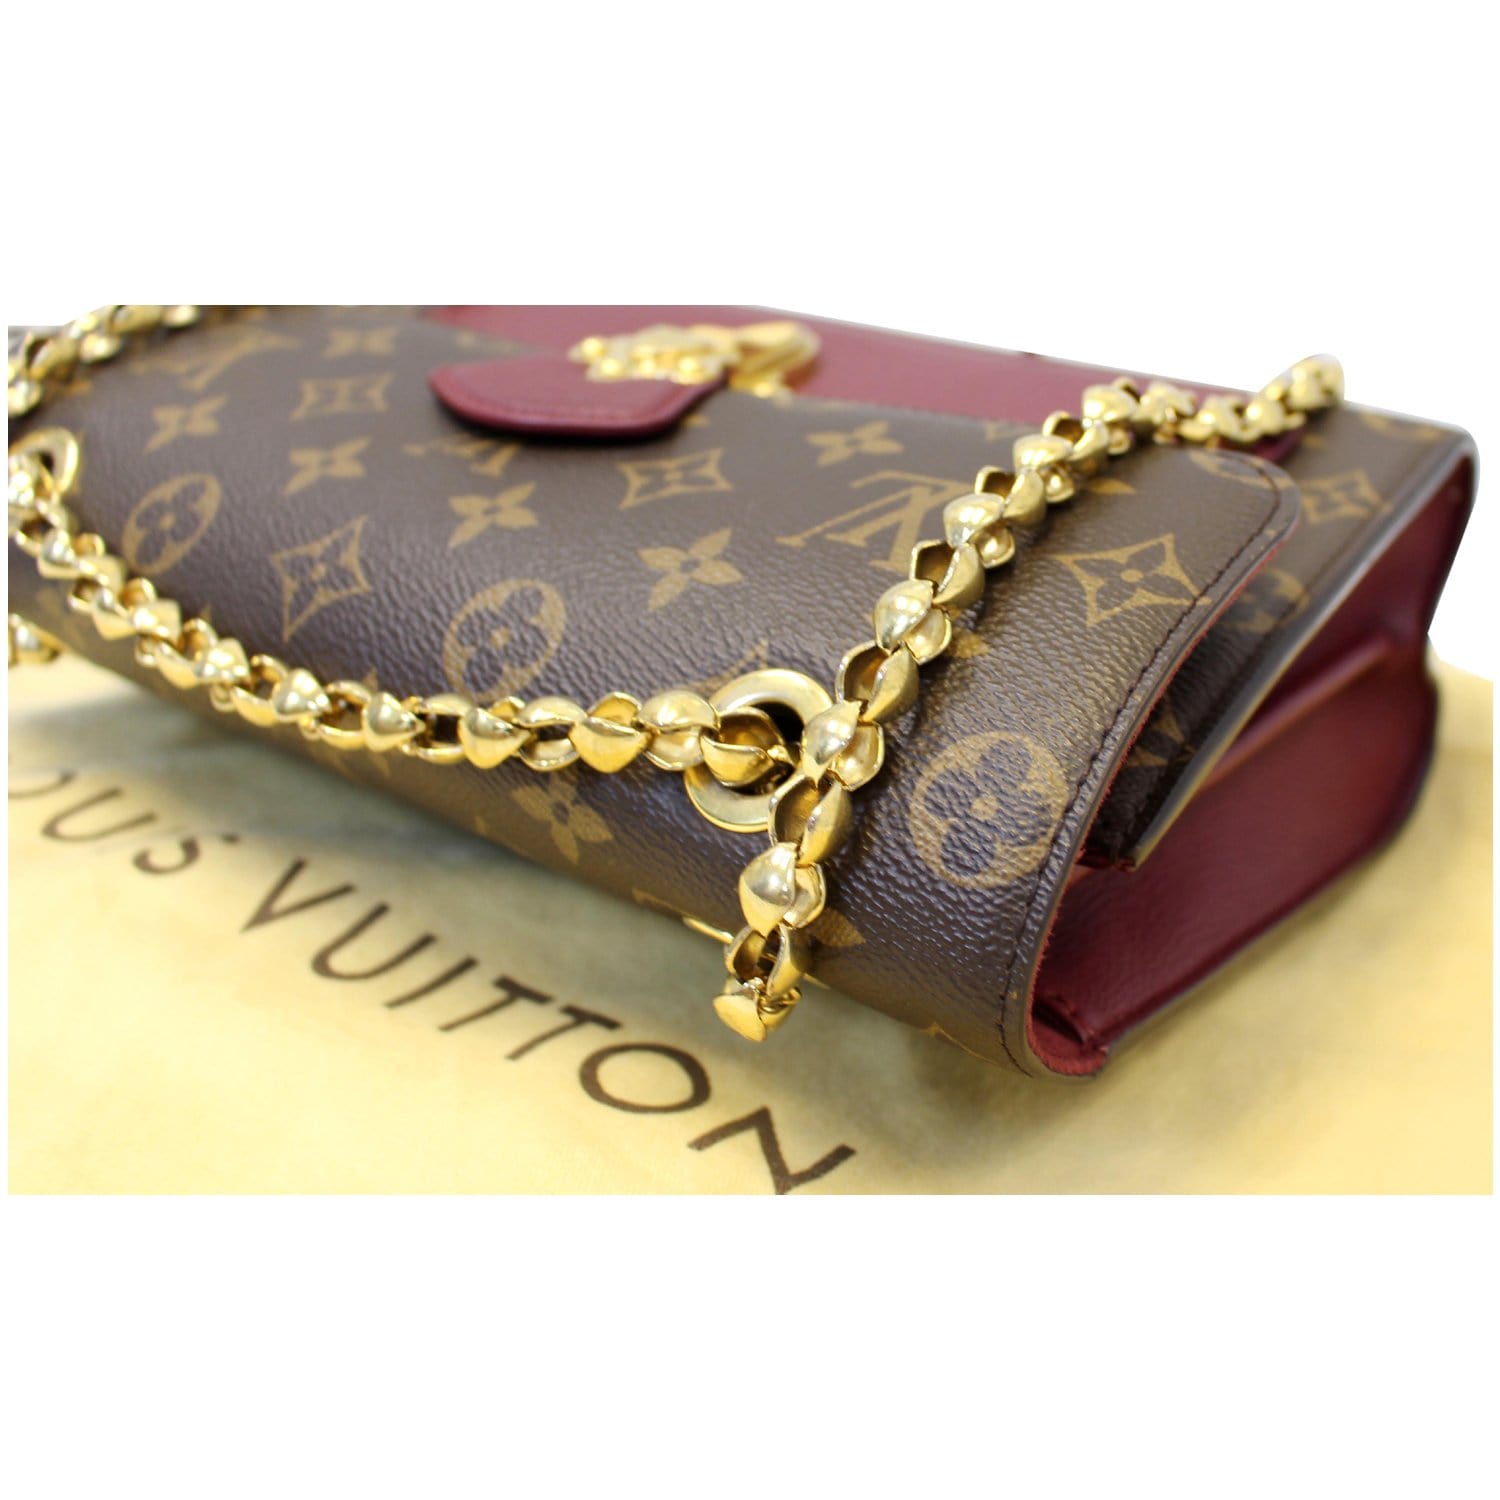 Tacones Louis Vuitton Cafe Monogram Avinnato / Luxury Bags